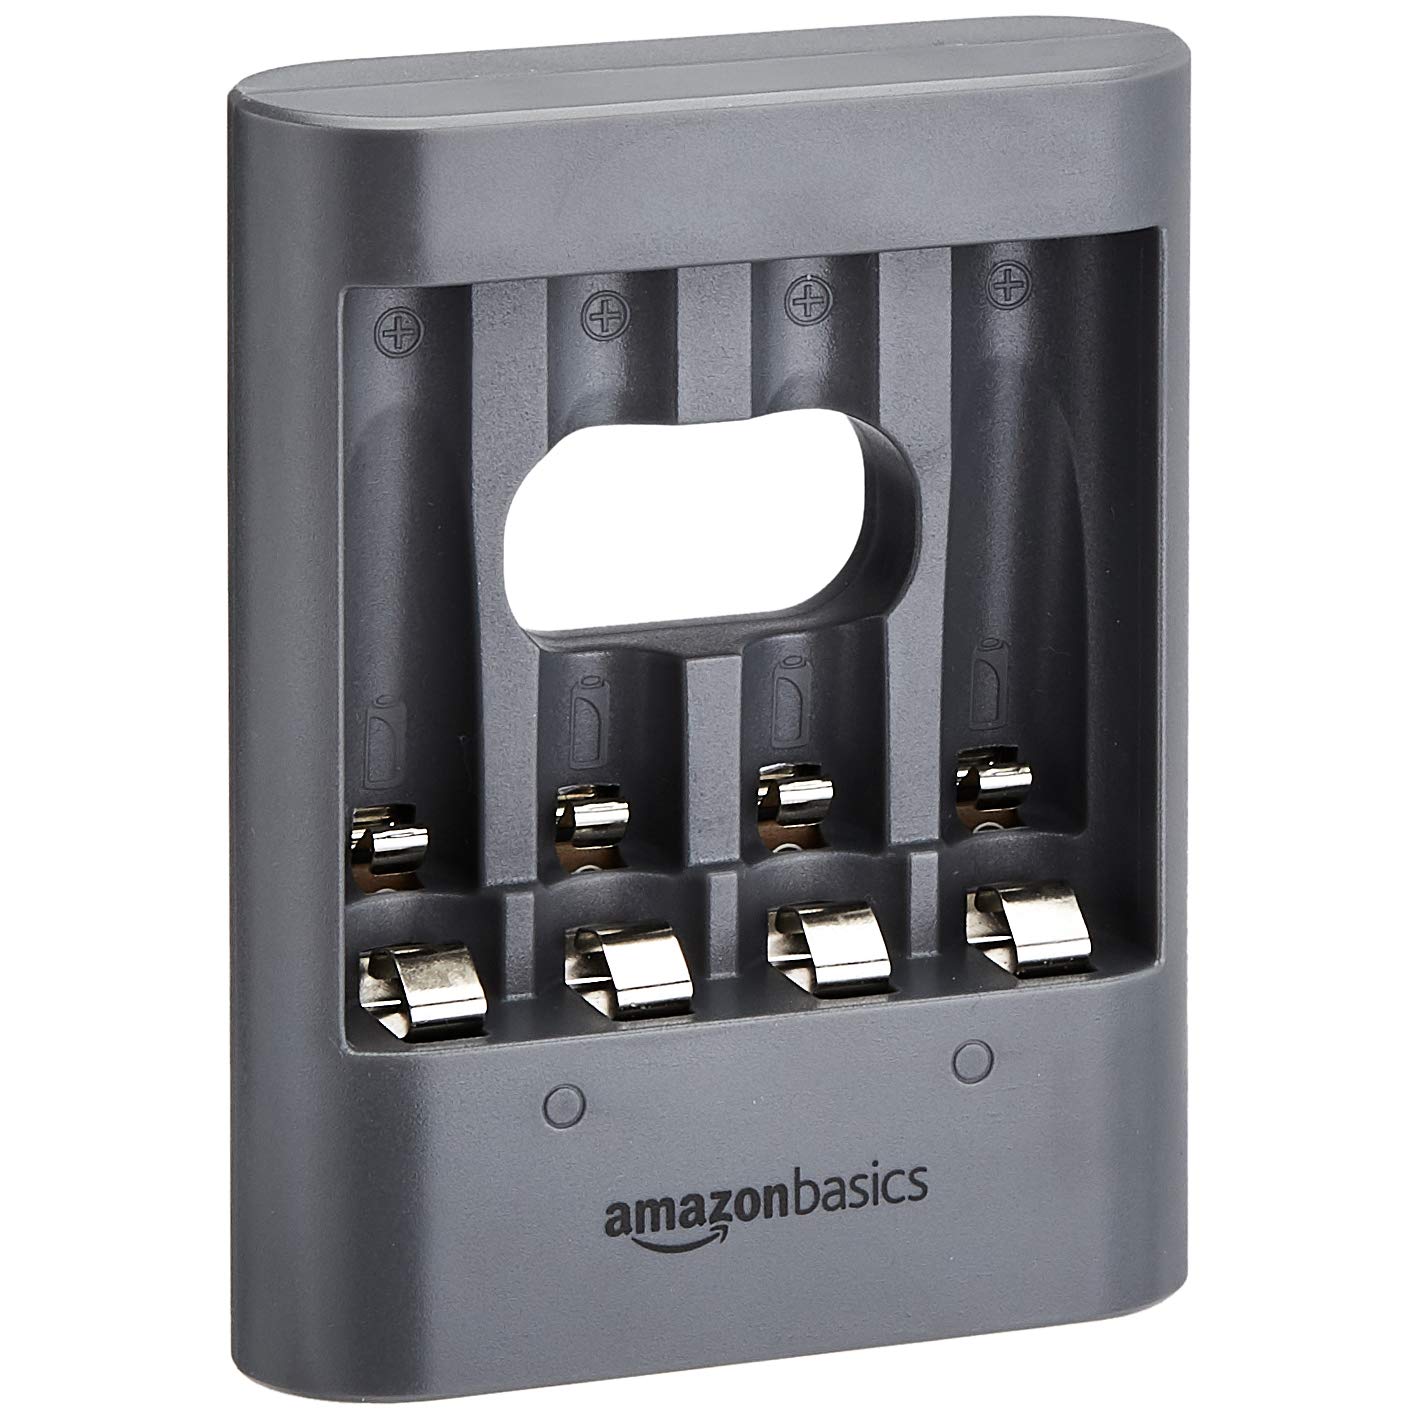 Amazon Basics Overnight USB Charger - Black